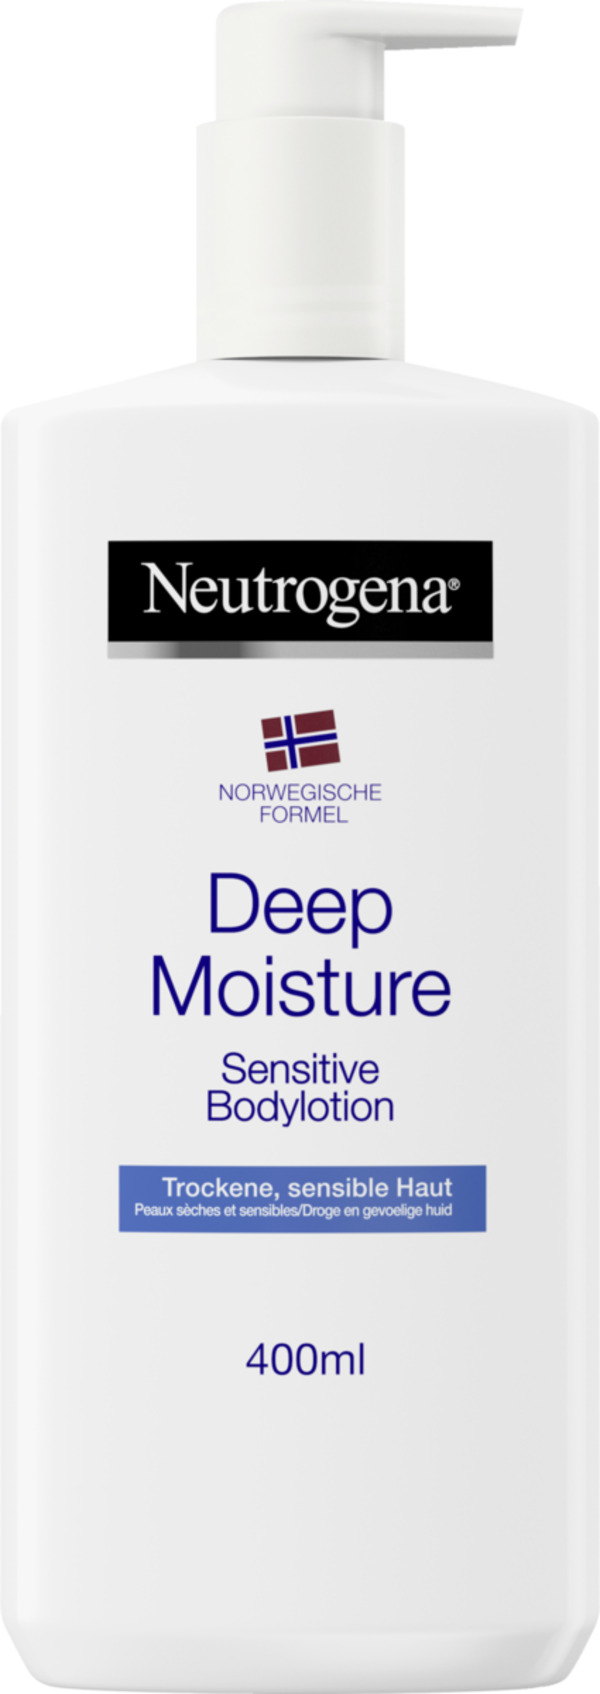 Bild 1 von Neutrogena Norwegische Formel Deep Moisture Bodylotion Se 9.48 EUR/ 1 l